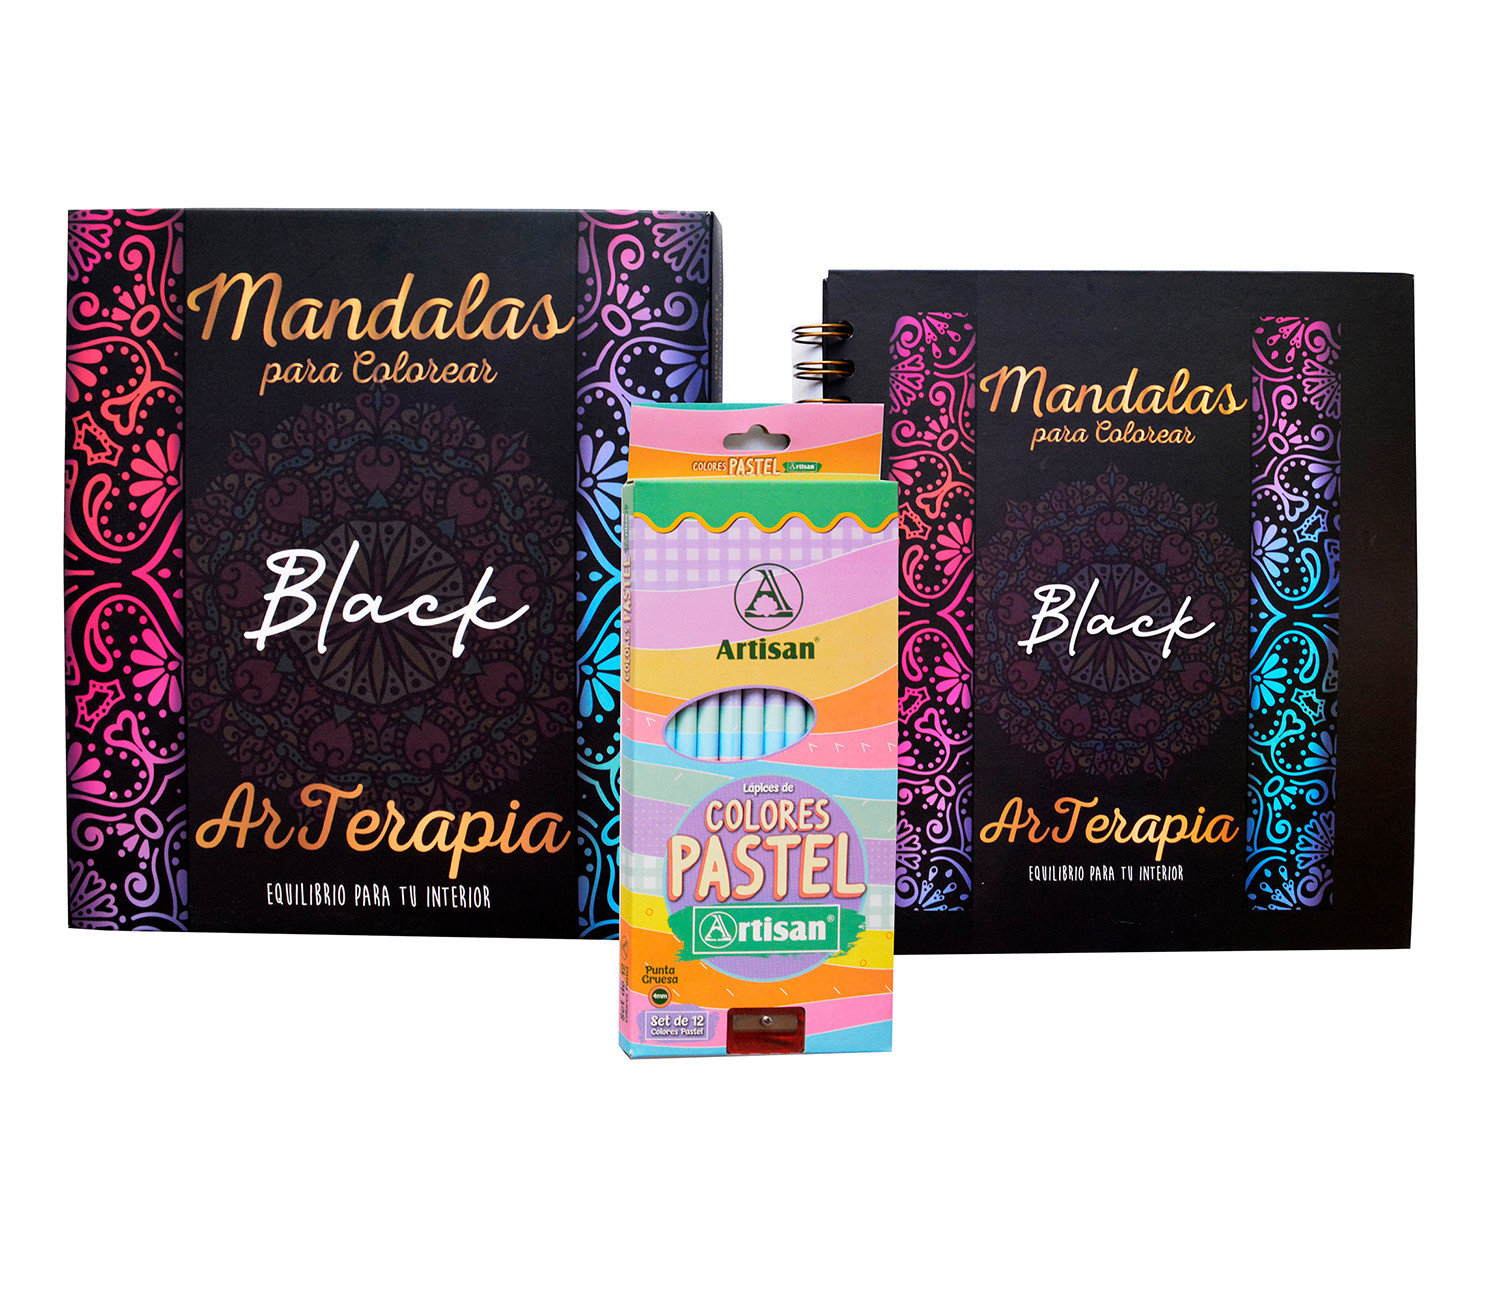 Imagen Mandalas para colorear BLACK 2